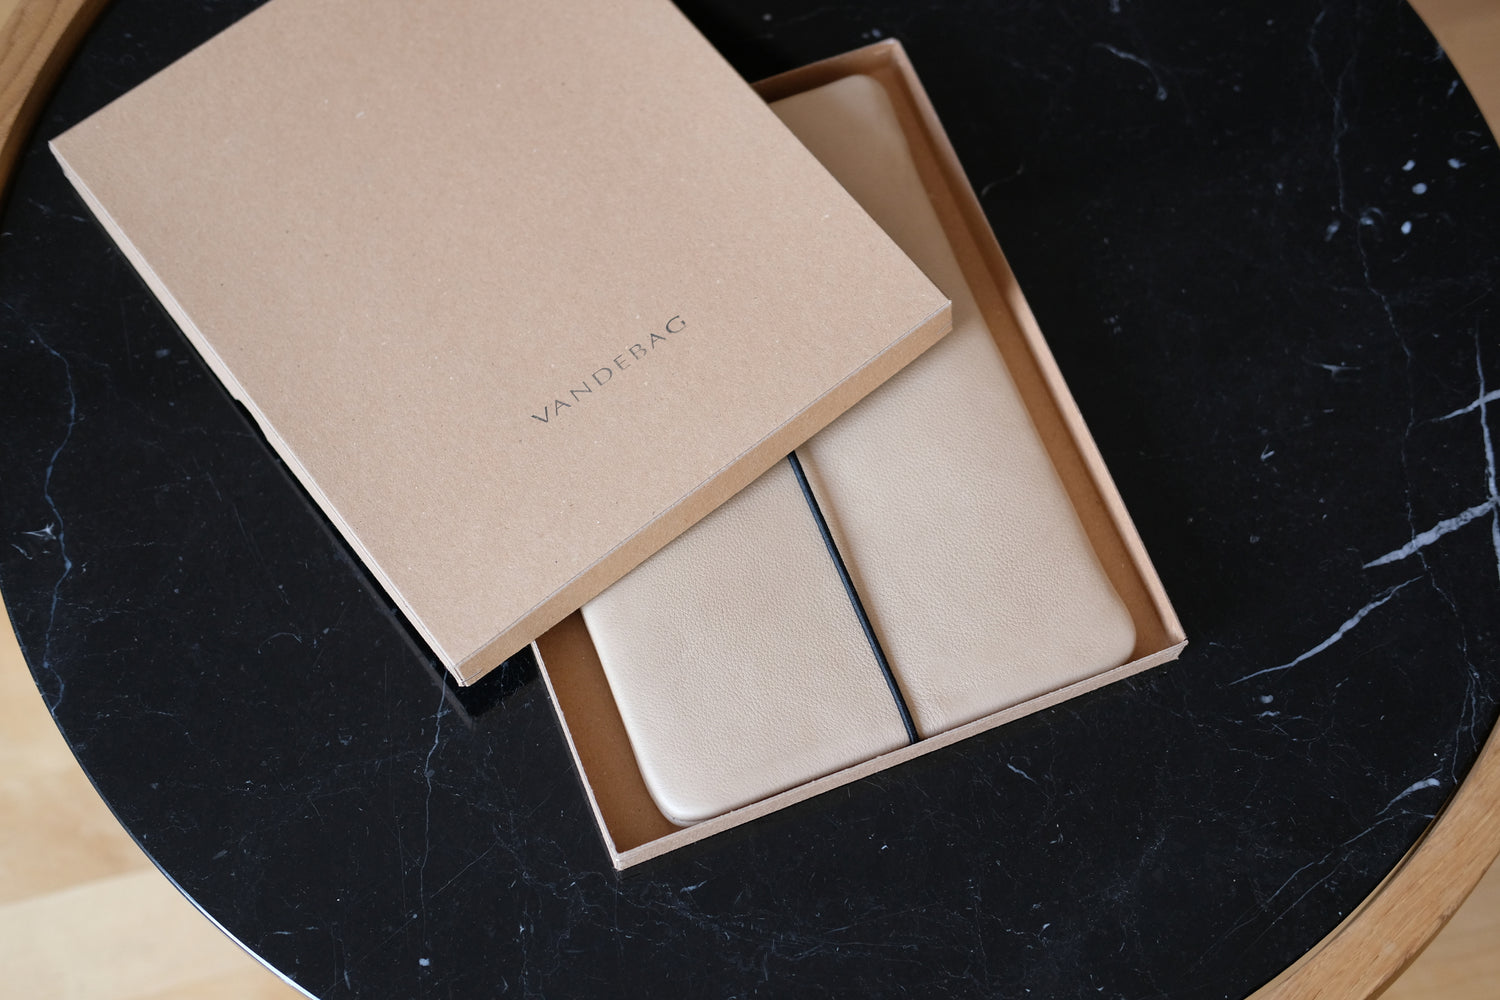 maßgefertigte Tablet Hülle aus beigem Leder liegt in einem braunen Produktkarton